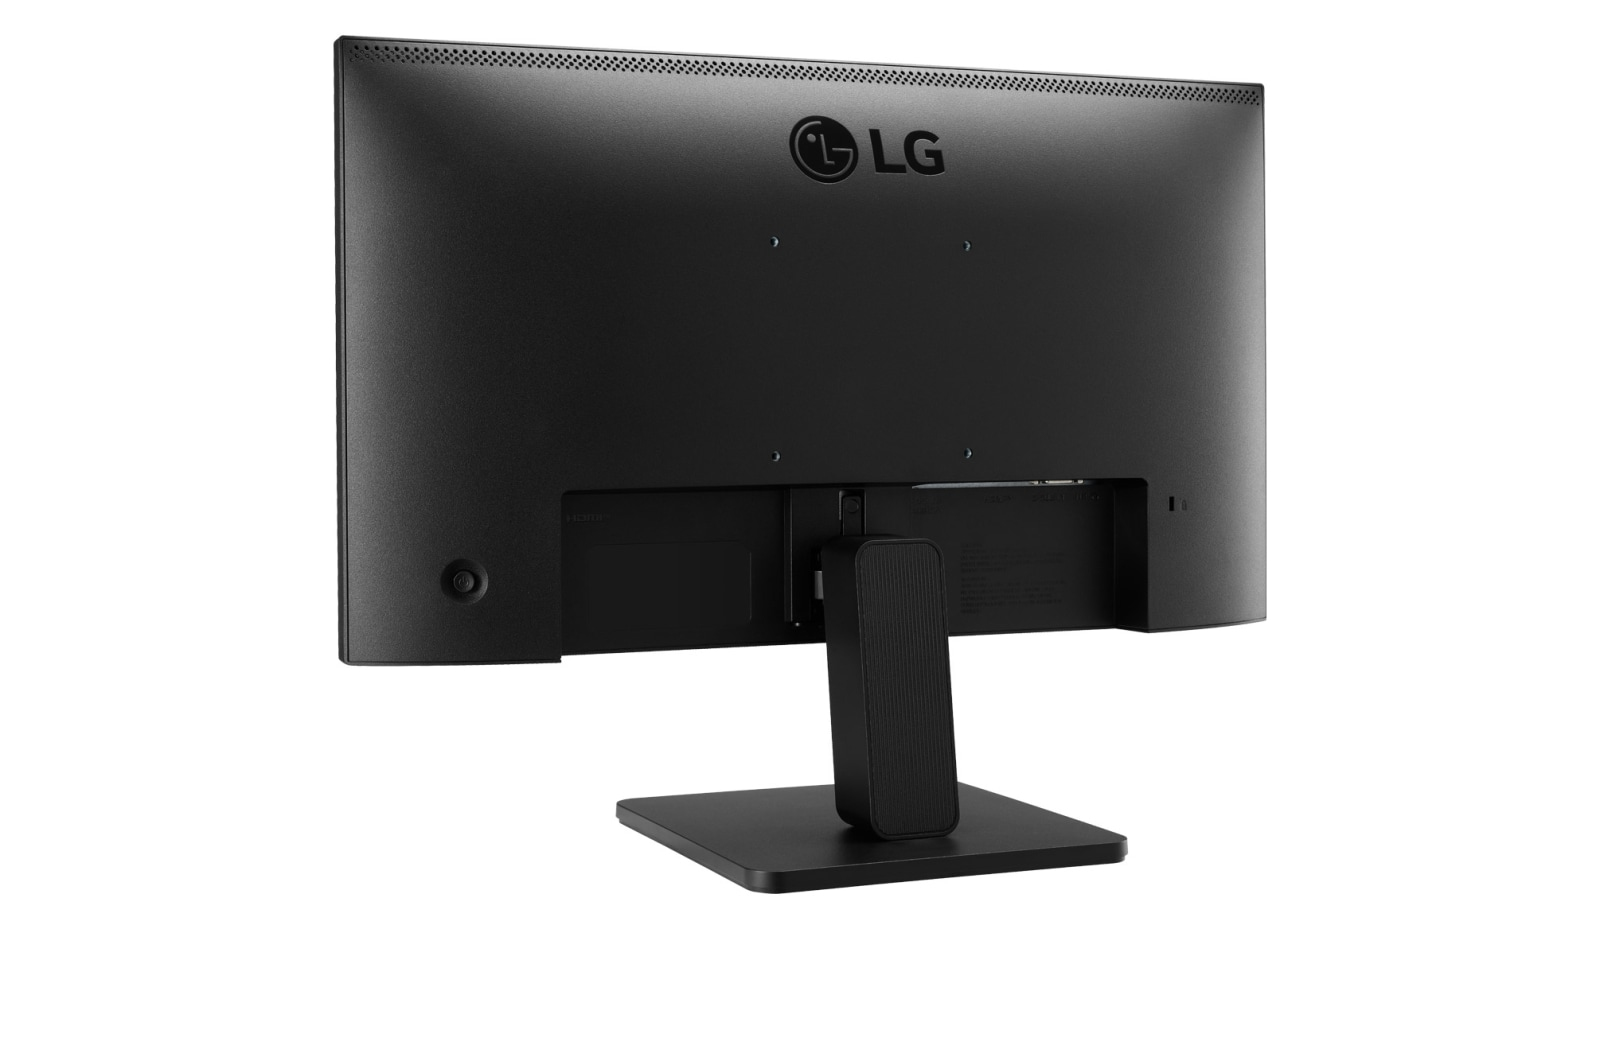 LG - Monitor LG 22" 22MR410-B VA FHD 100Hz 5ms sRGB 99%